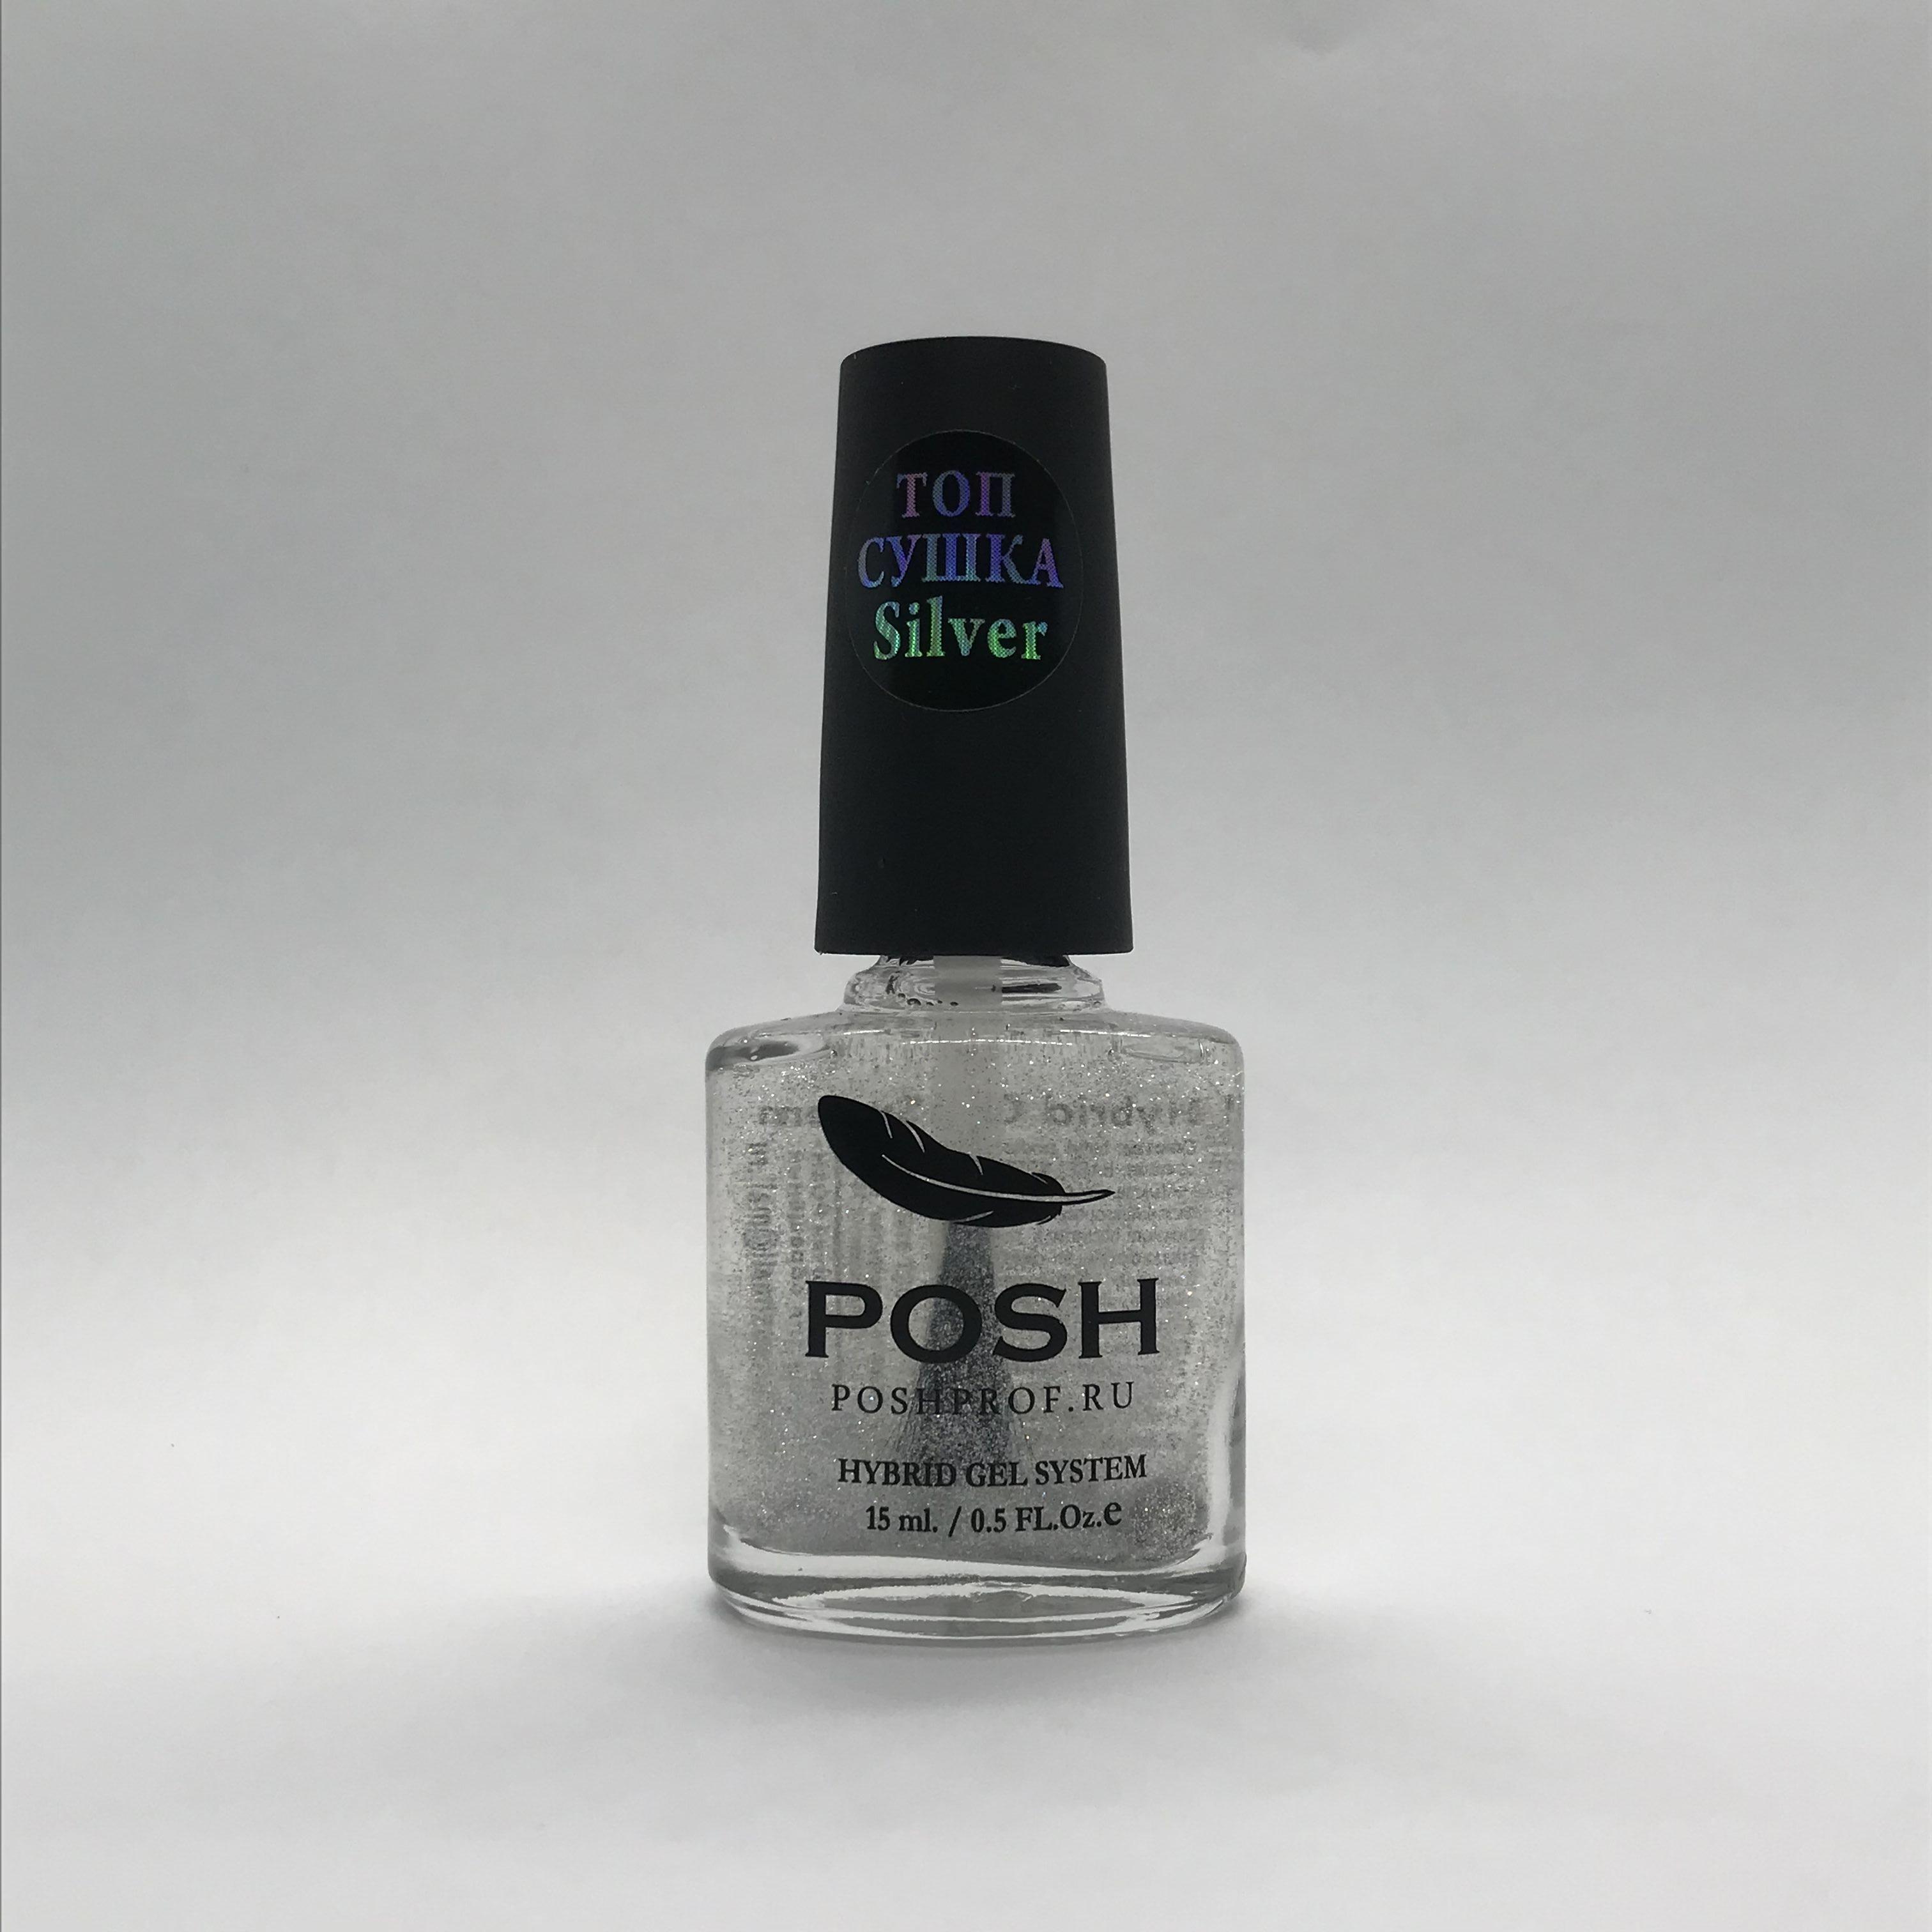 POSH Hybrid Gel System Top Silver Сушка-закрепитель для мгновенной фиксации лака на ногтях с серебрянными голографическими частицами 15 мл